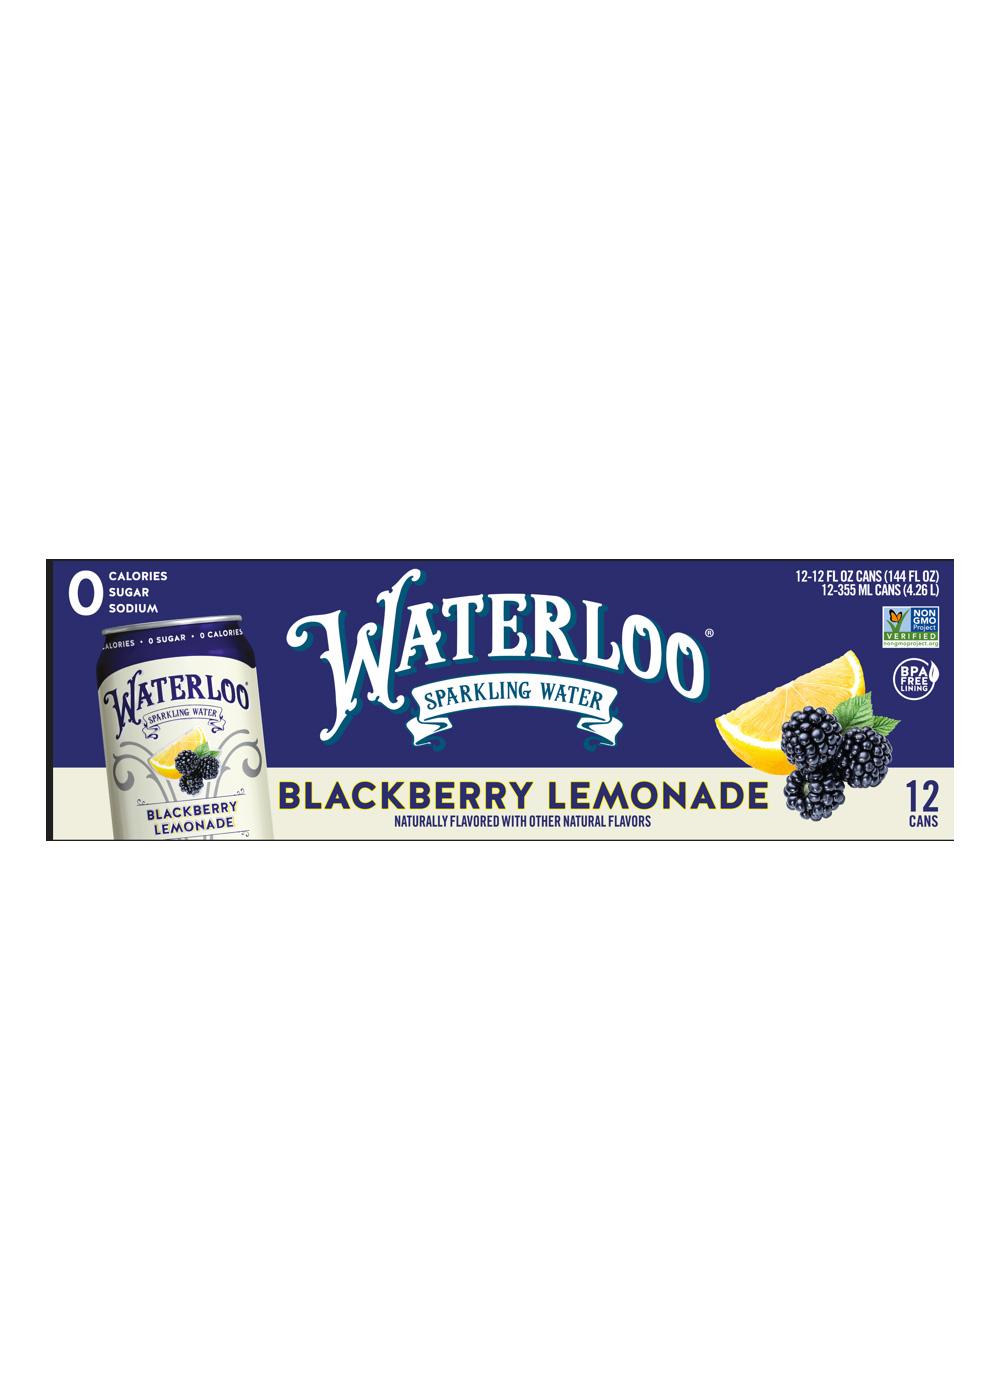 Waterloo Blackberry Lemonade Sparkling Water 12 oz Cans; image 1 of 3